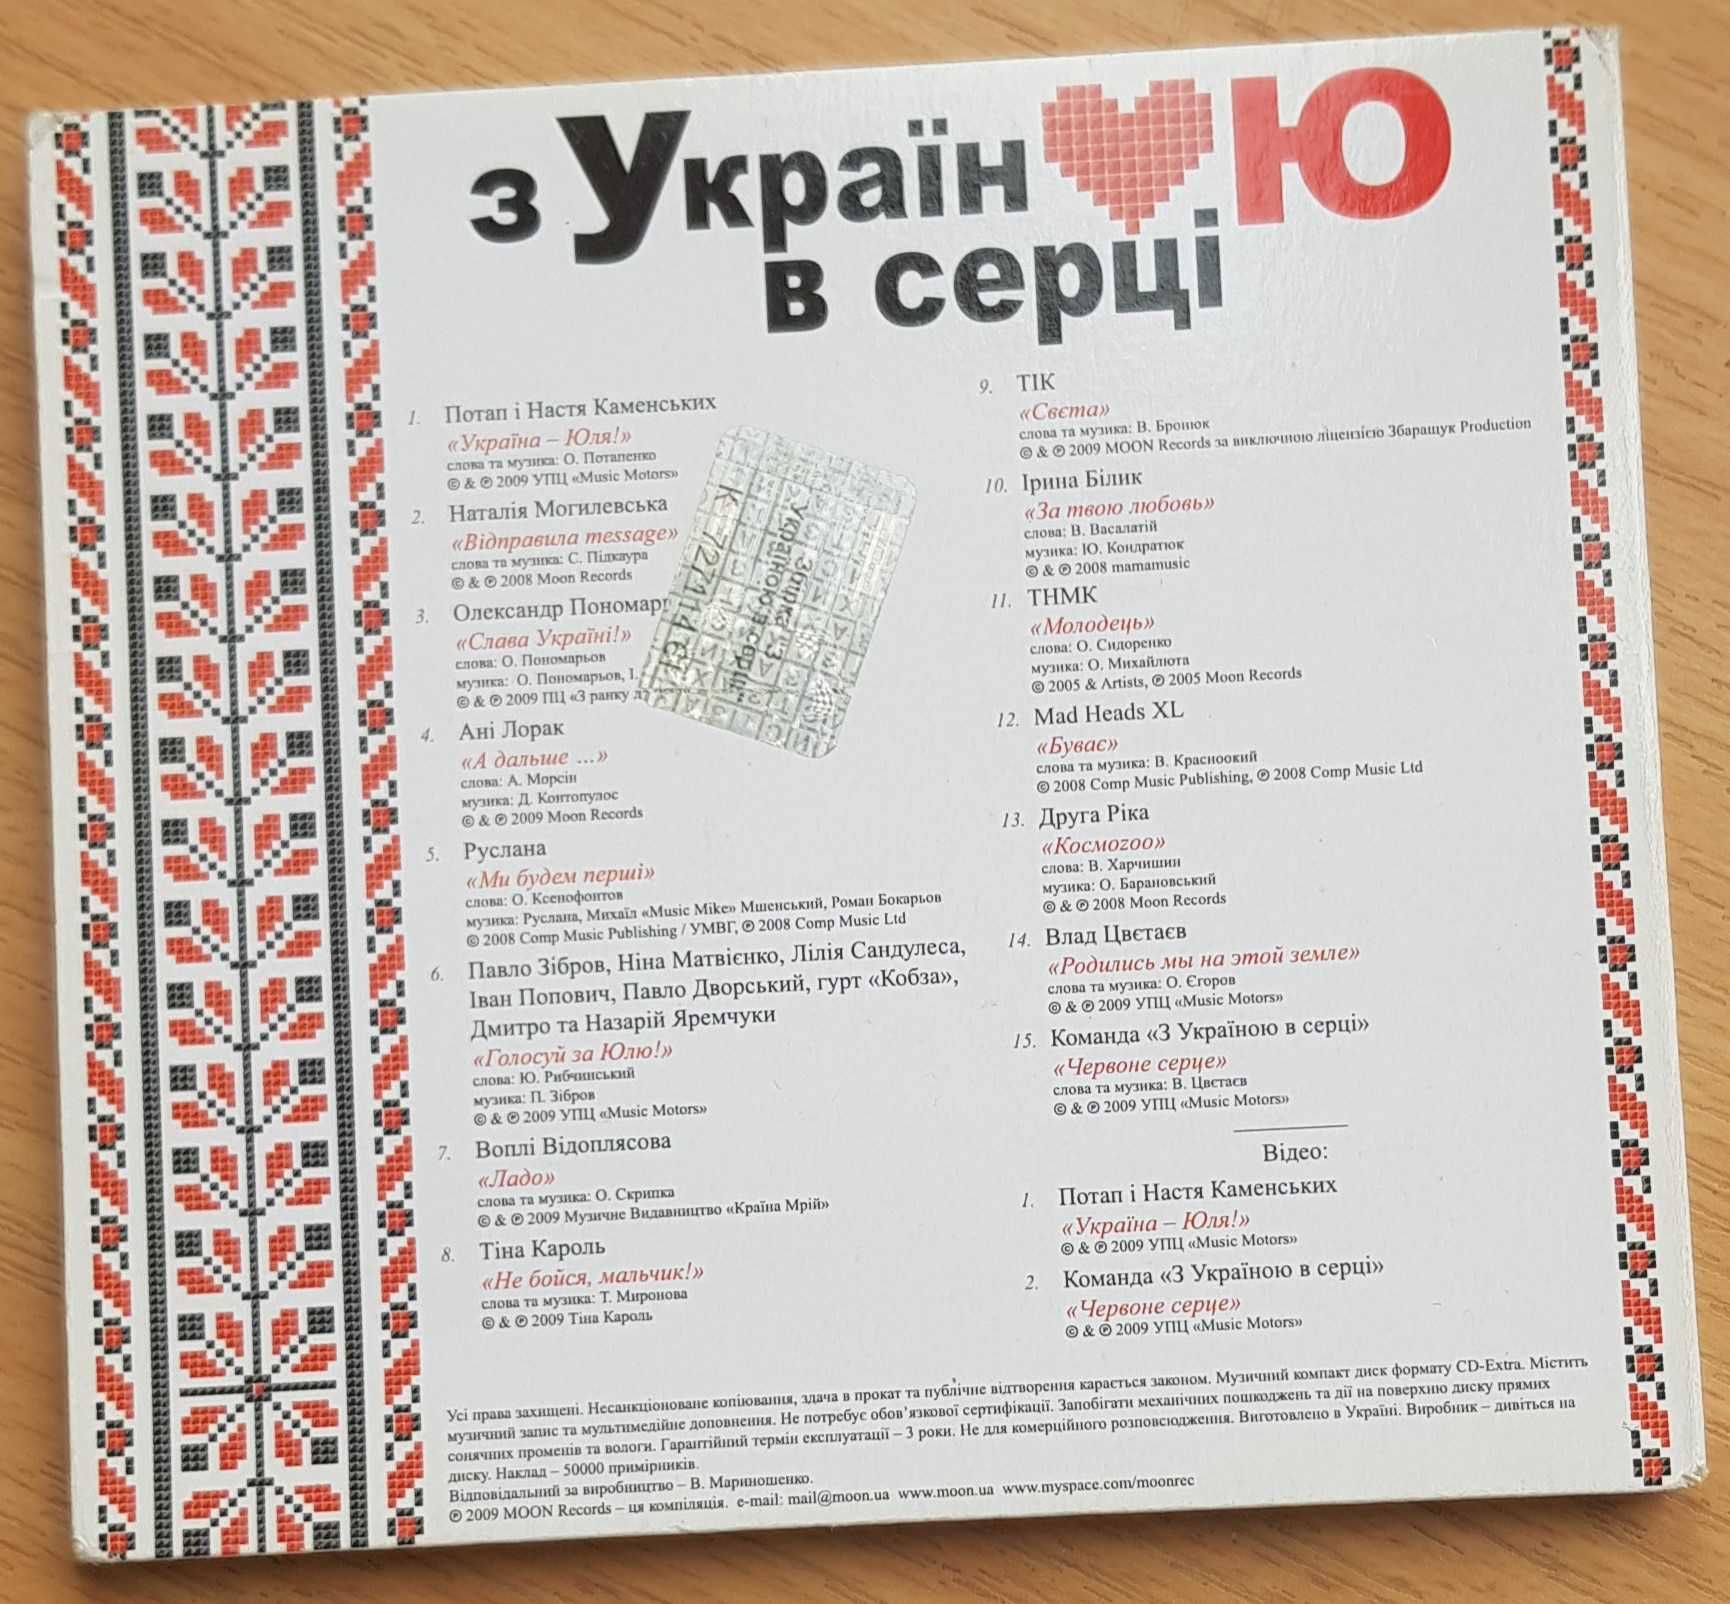 CD "З Україною в серці" 2009. "Пісні революції" 2004.